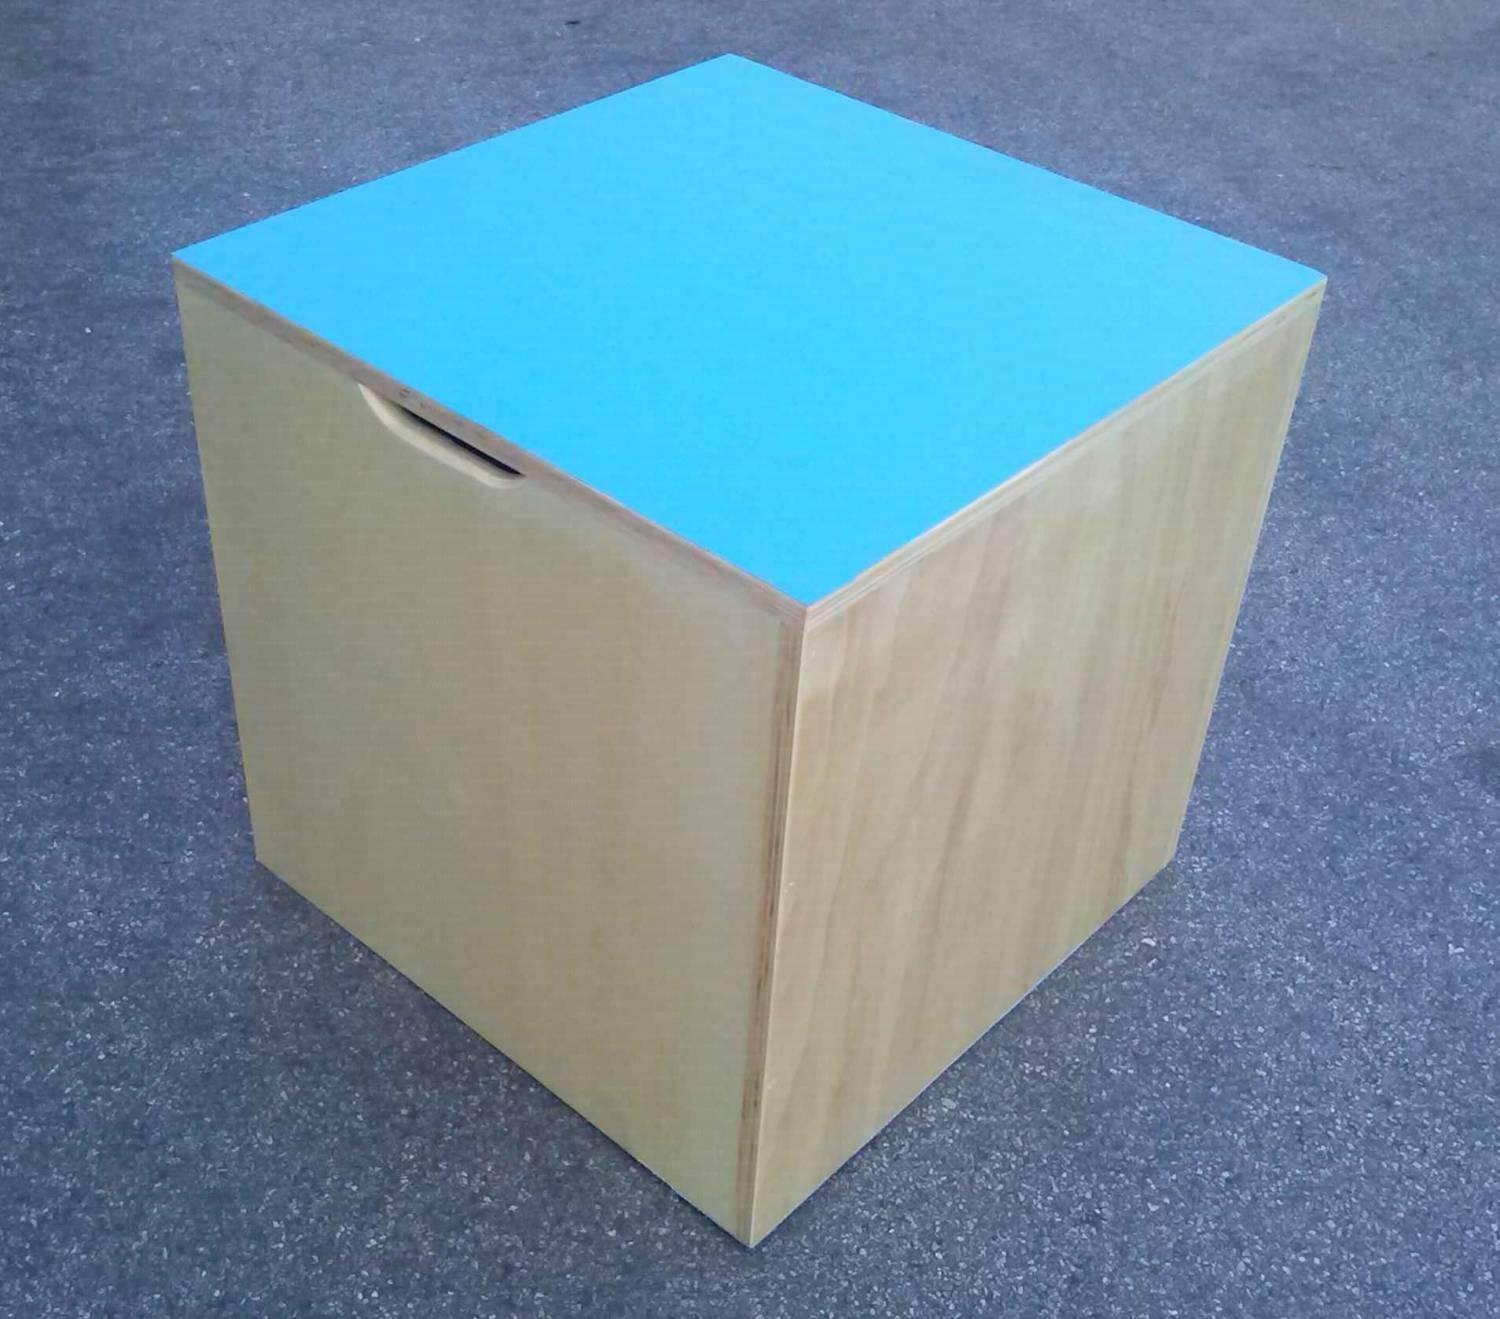 Cubo propriocettivo misura 40x40x40 cm., in legno con fondo e piano superiore dotato di antiscivolo, con impugnature per il trasporto.